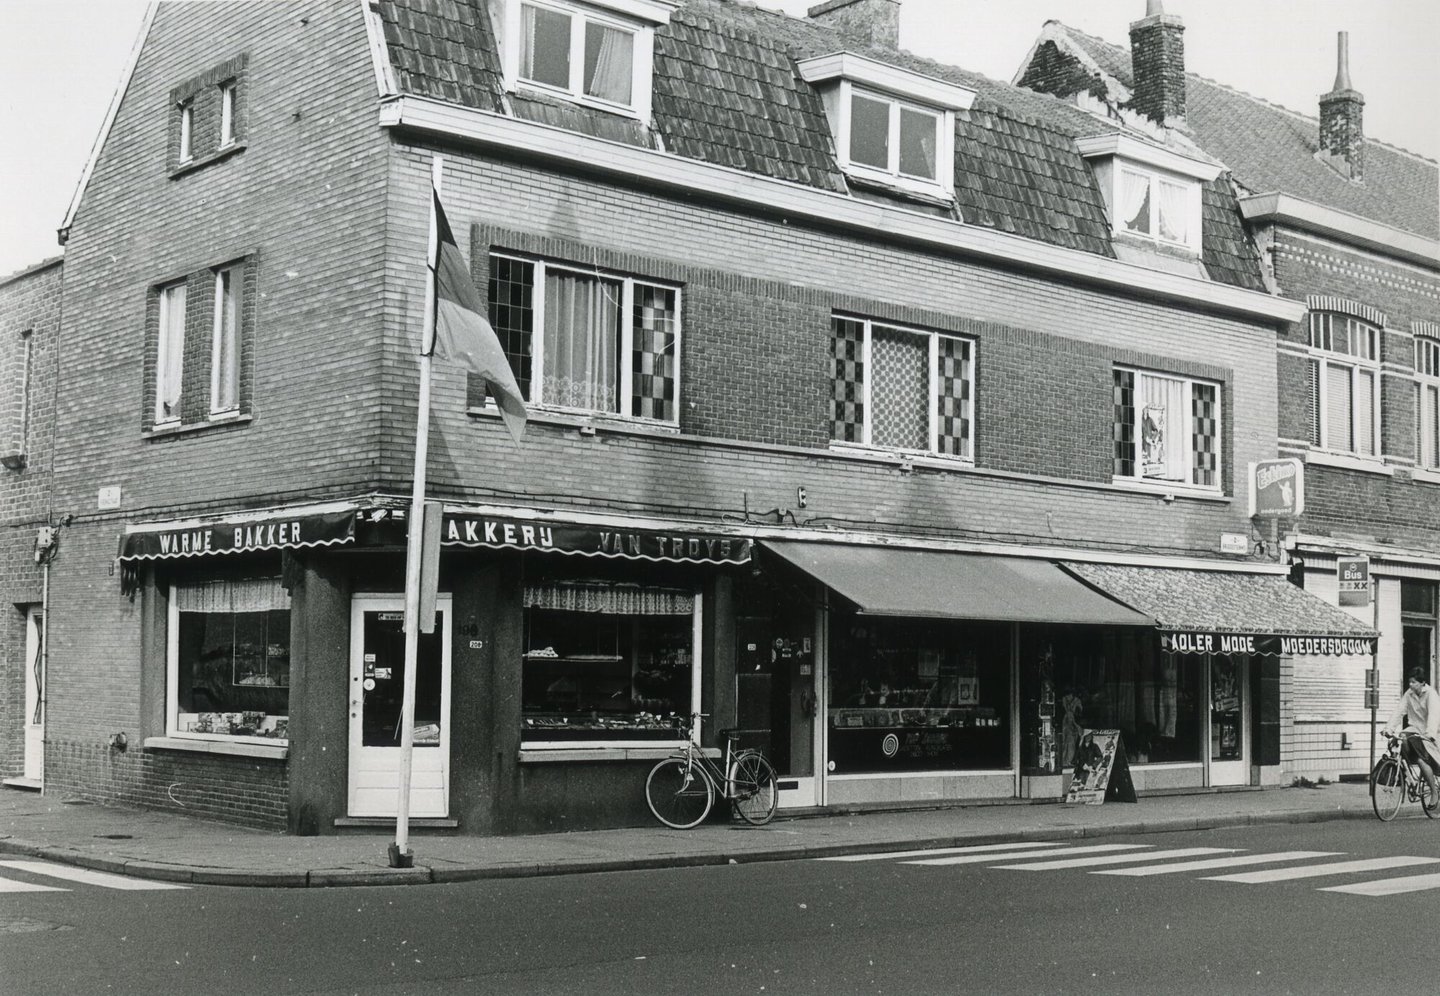 Straatbeeld met etalage van bakkerij Van Troys, een platenwinkel en kledingwinkel Adler Mode in Gent